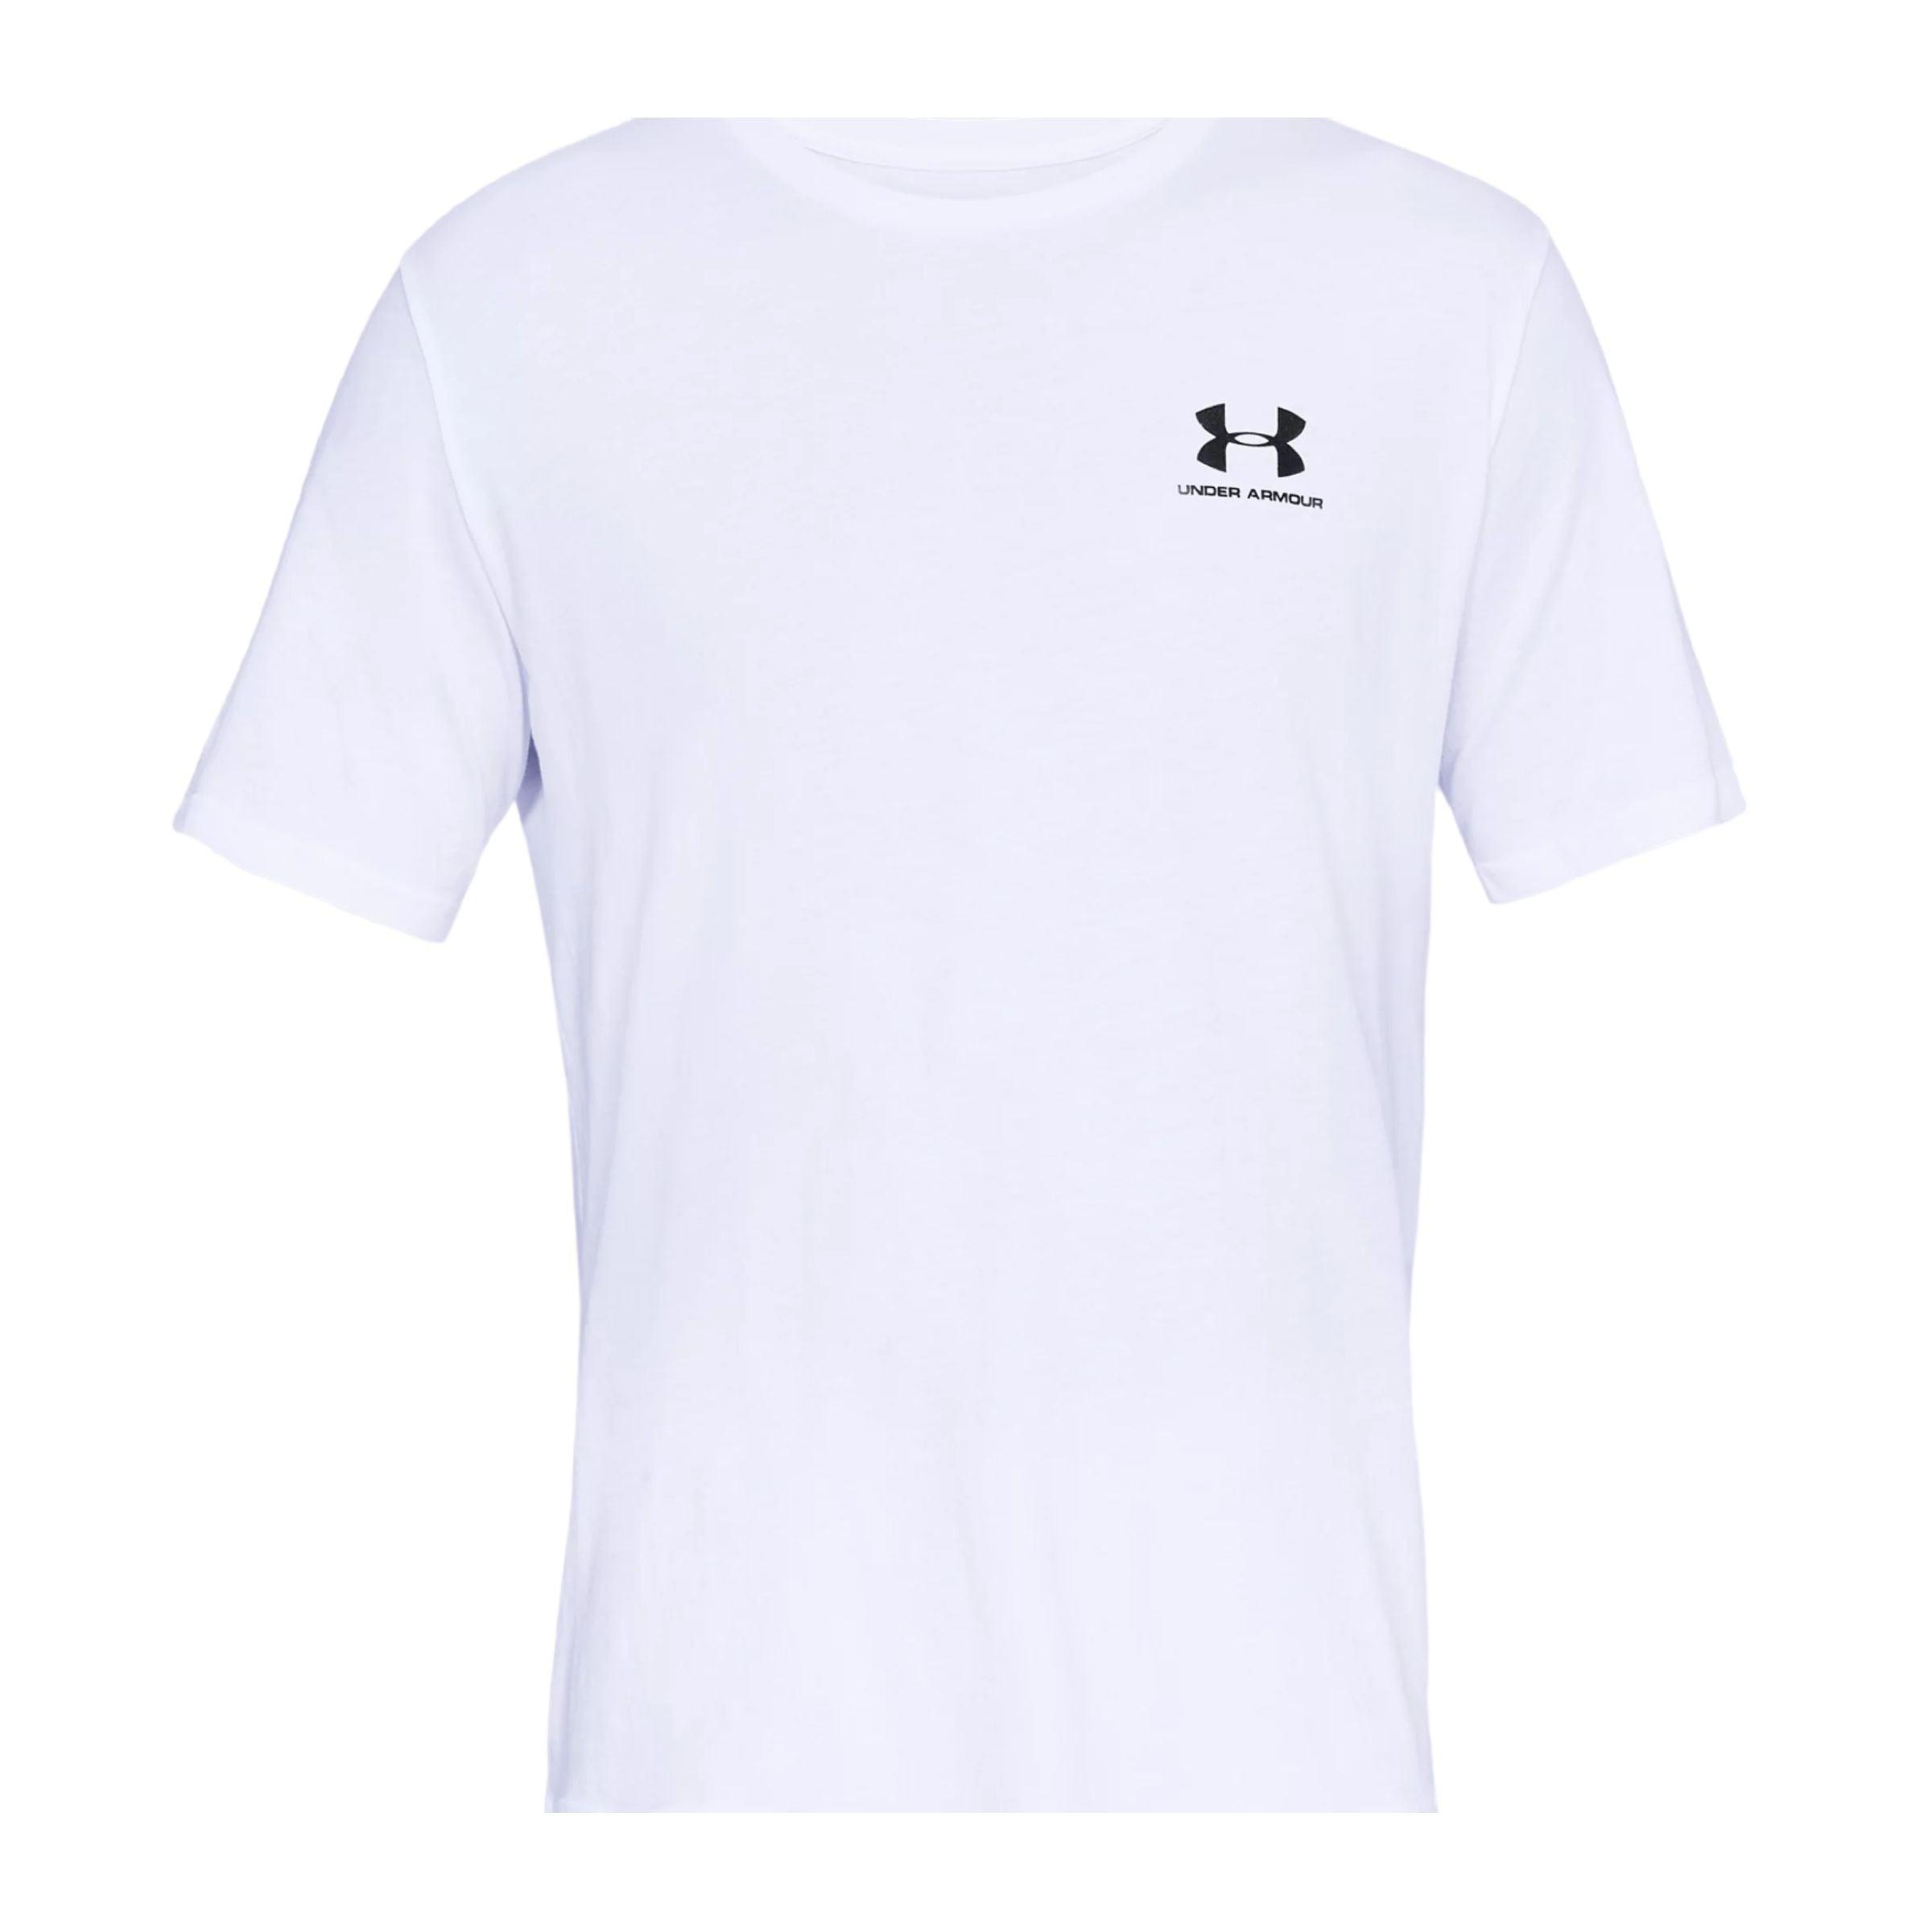 Under Armour | T-shirt Sportstyle Uomo White/Black - Fabbrica Ski Sises